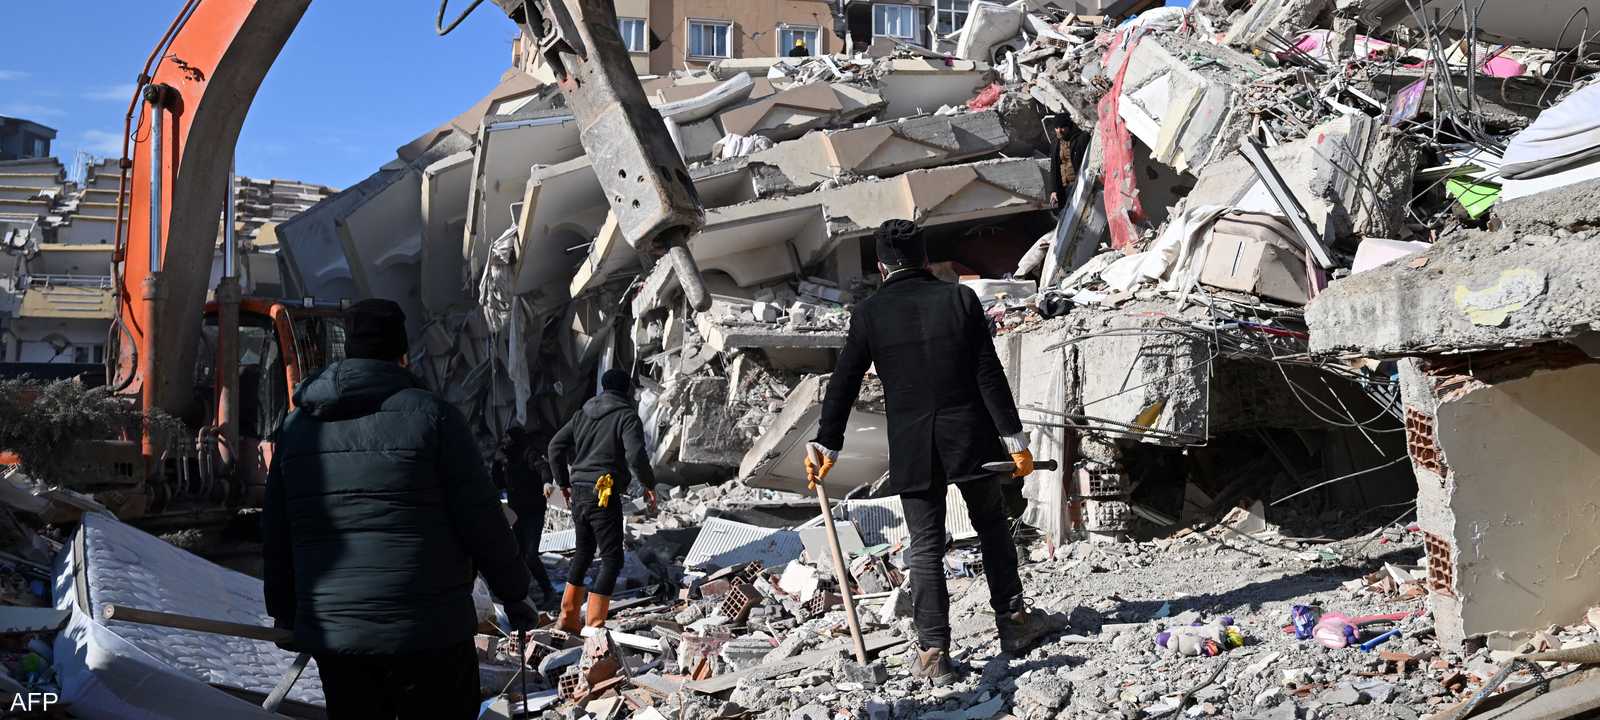 زلزال قوي يضرب سوريا وتركيا